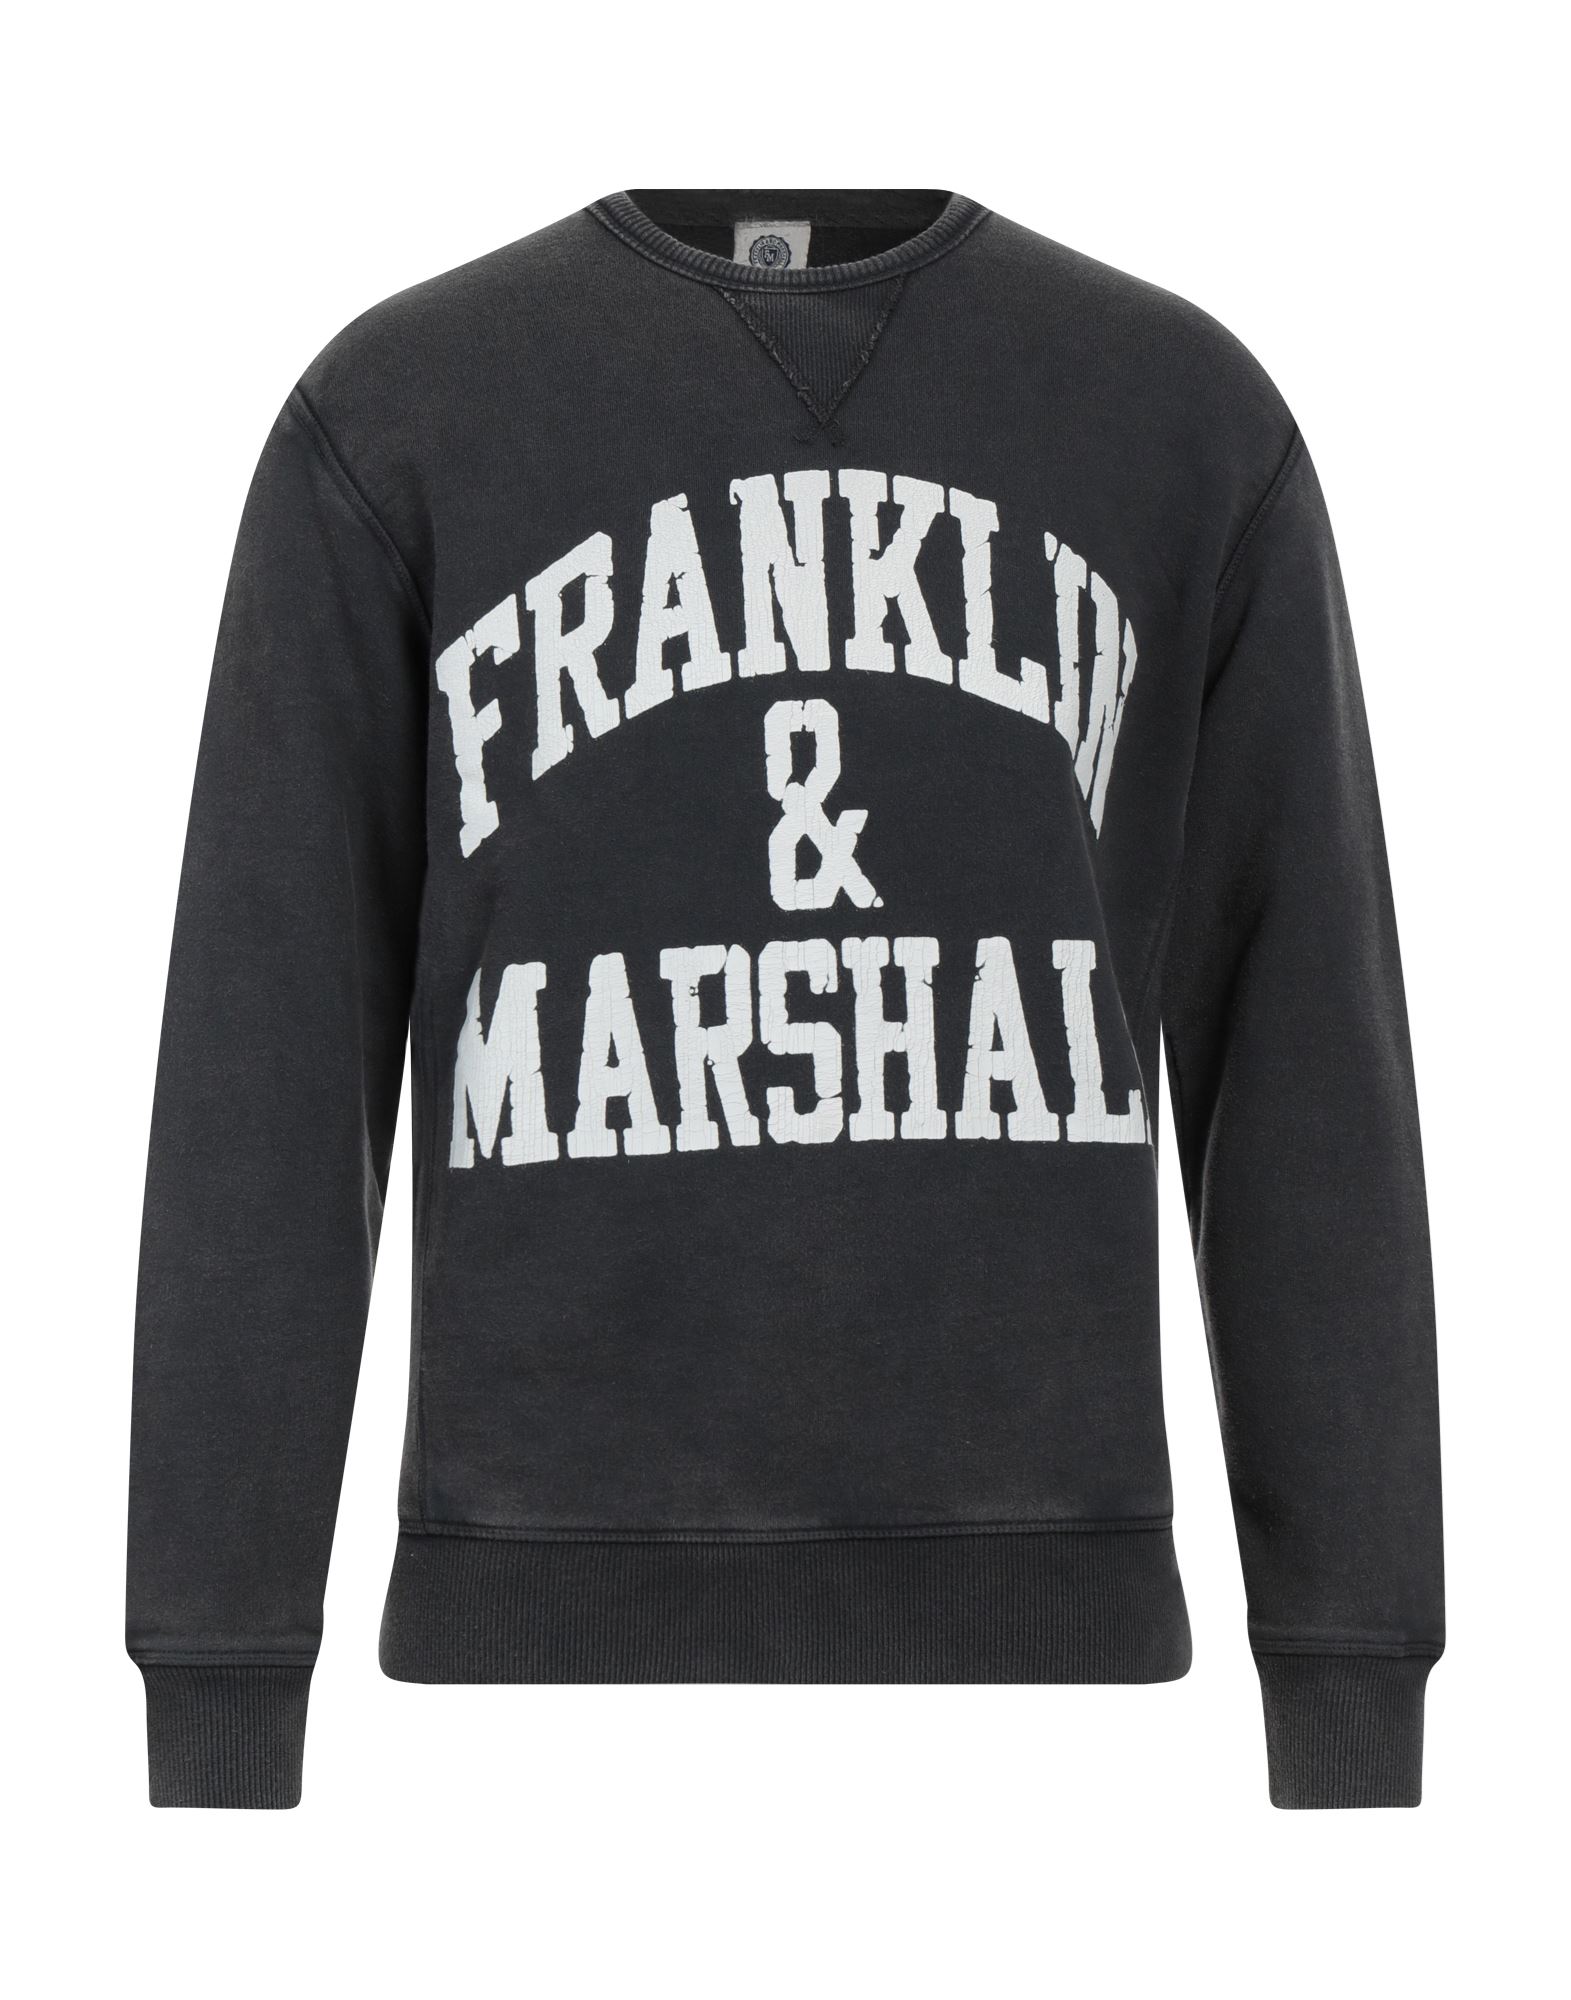 FRANKLIN & MARSHALL Sweatshirt Herren Blei von FRANKLIN & MARSHALL